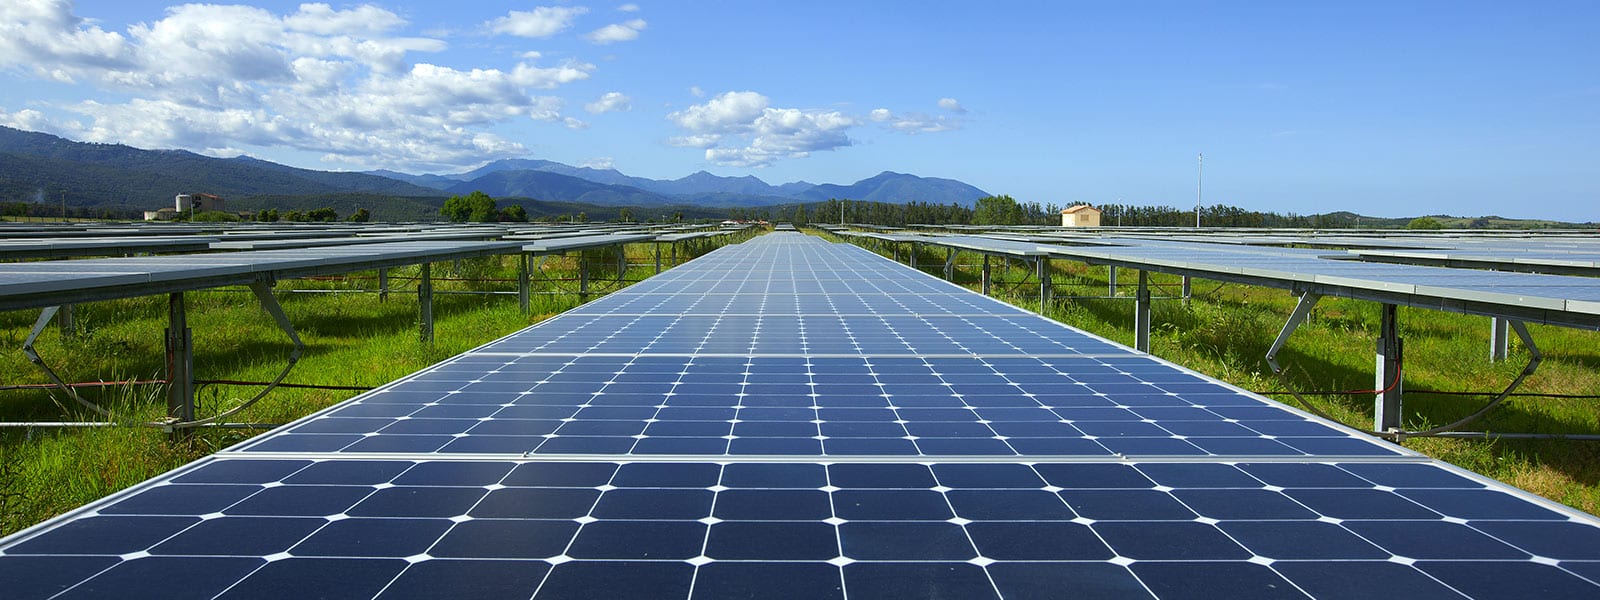 Nouvelles du soleil dans l’Aude : construction de la centrale solaire photovoltaïque de Fanjeaux